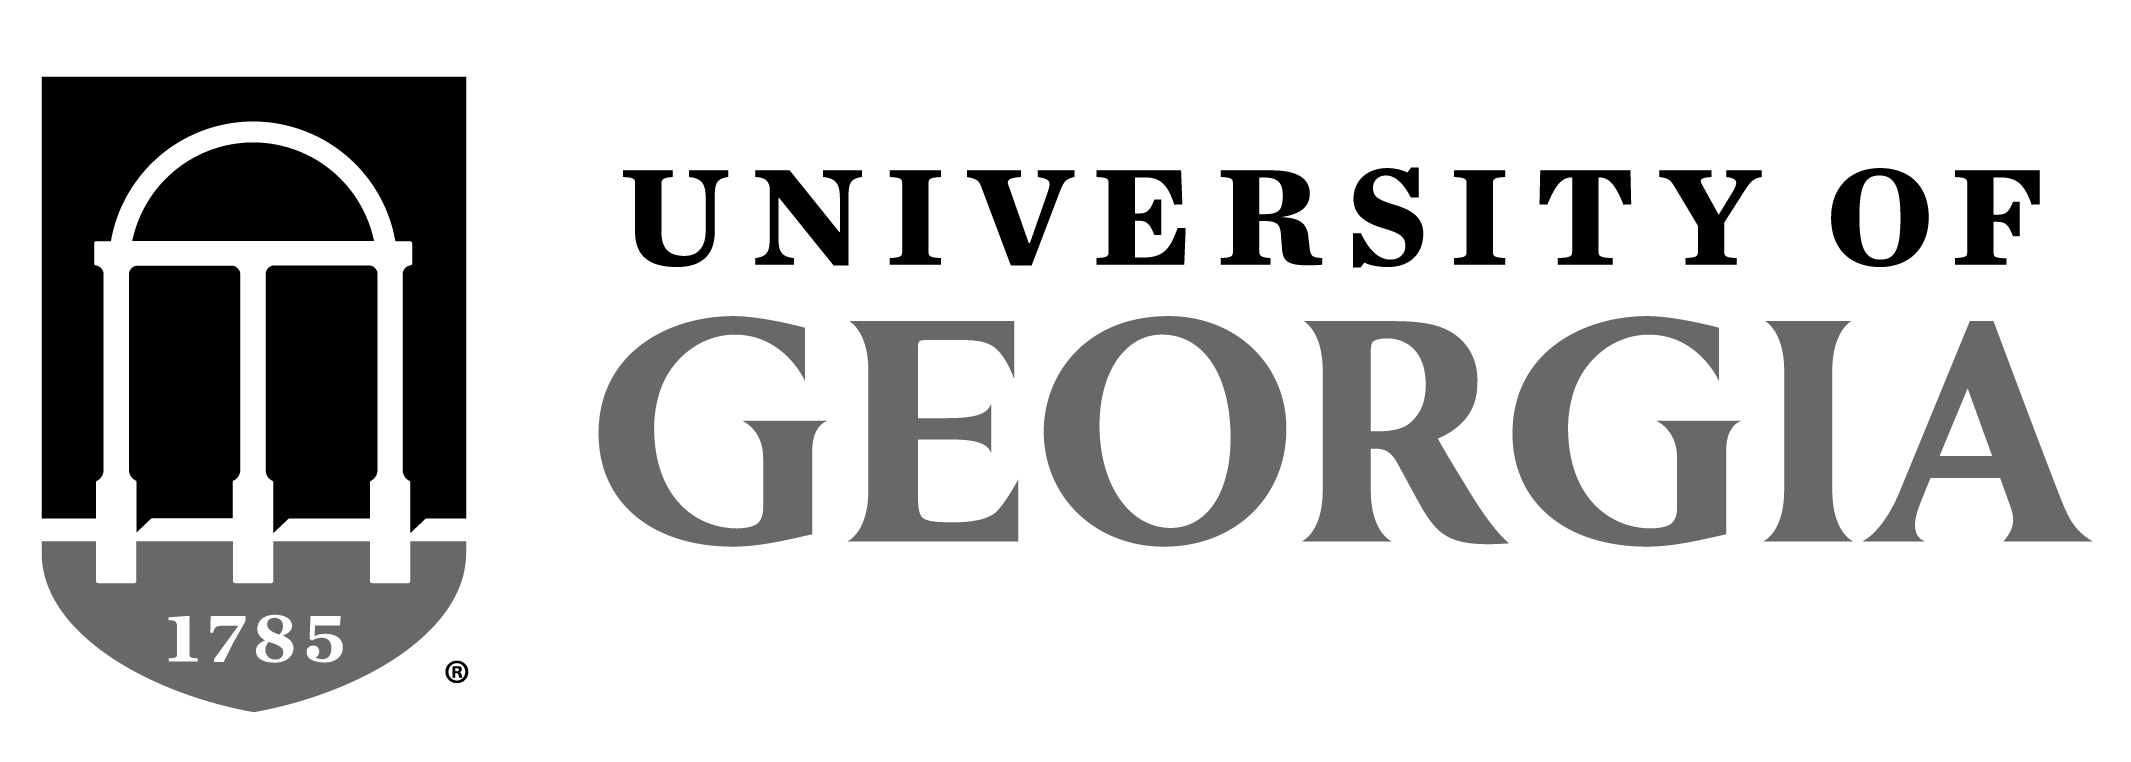 GEORGIA-FS-FC